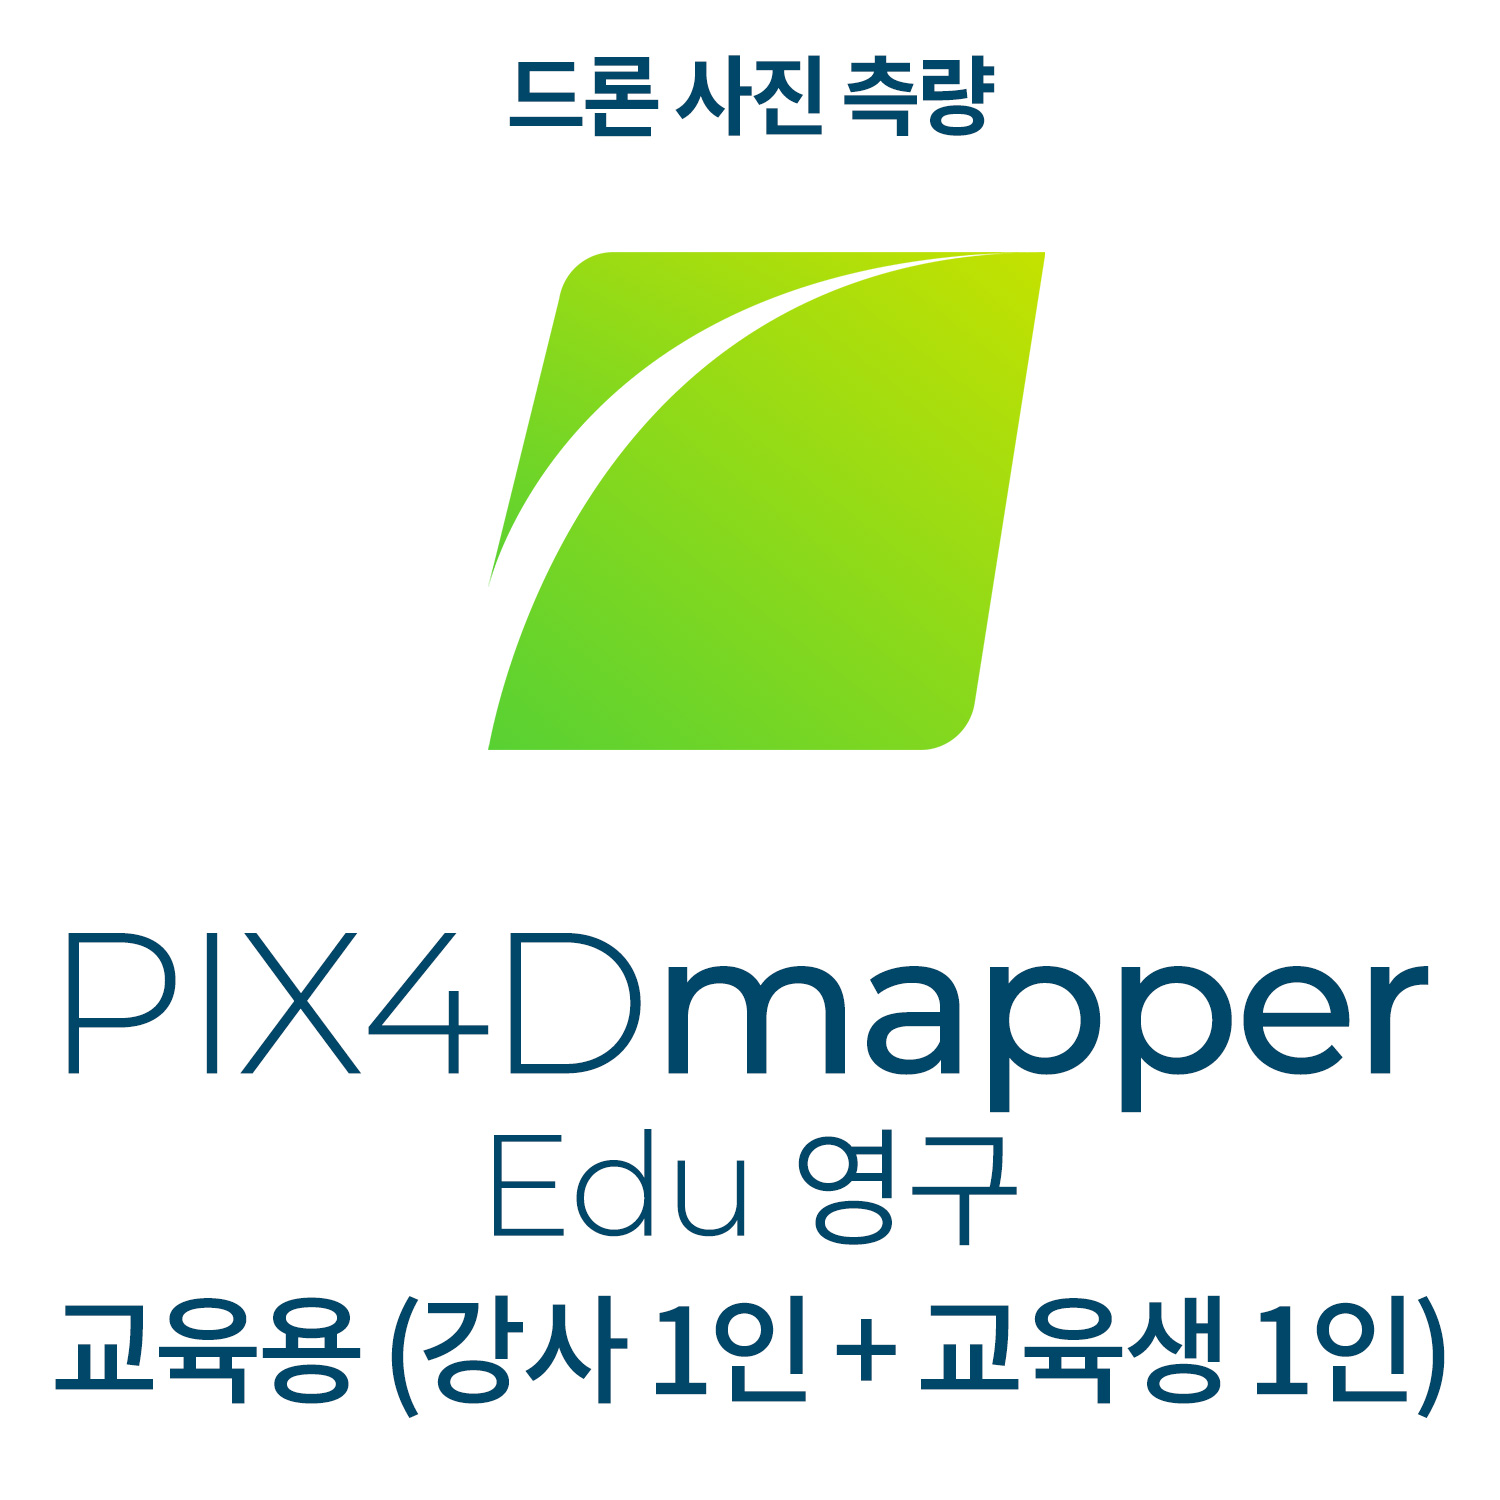 PIX4Dmapper EDU교육기관-학교(강사 1인 + 교육생 1인)(영구소유) 헬셀